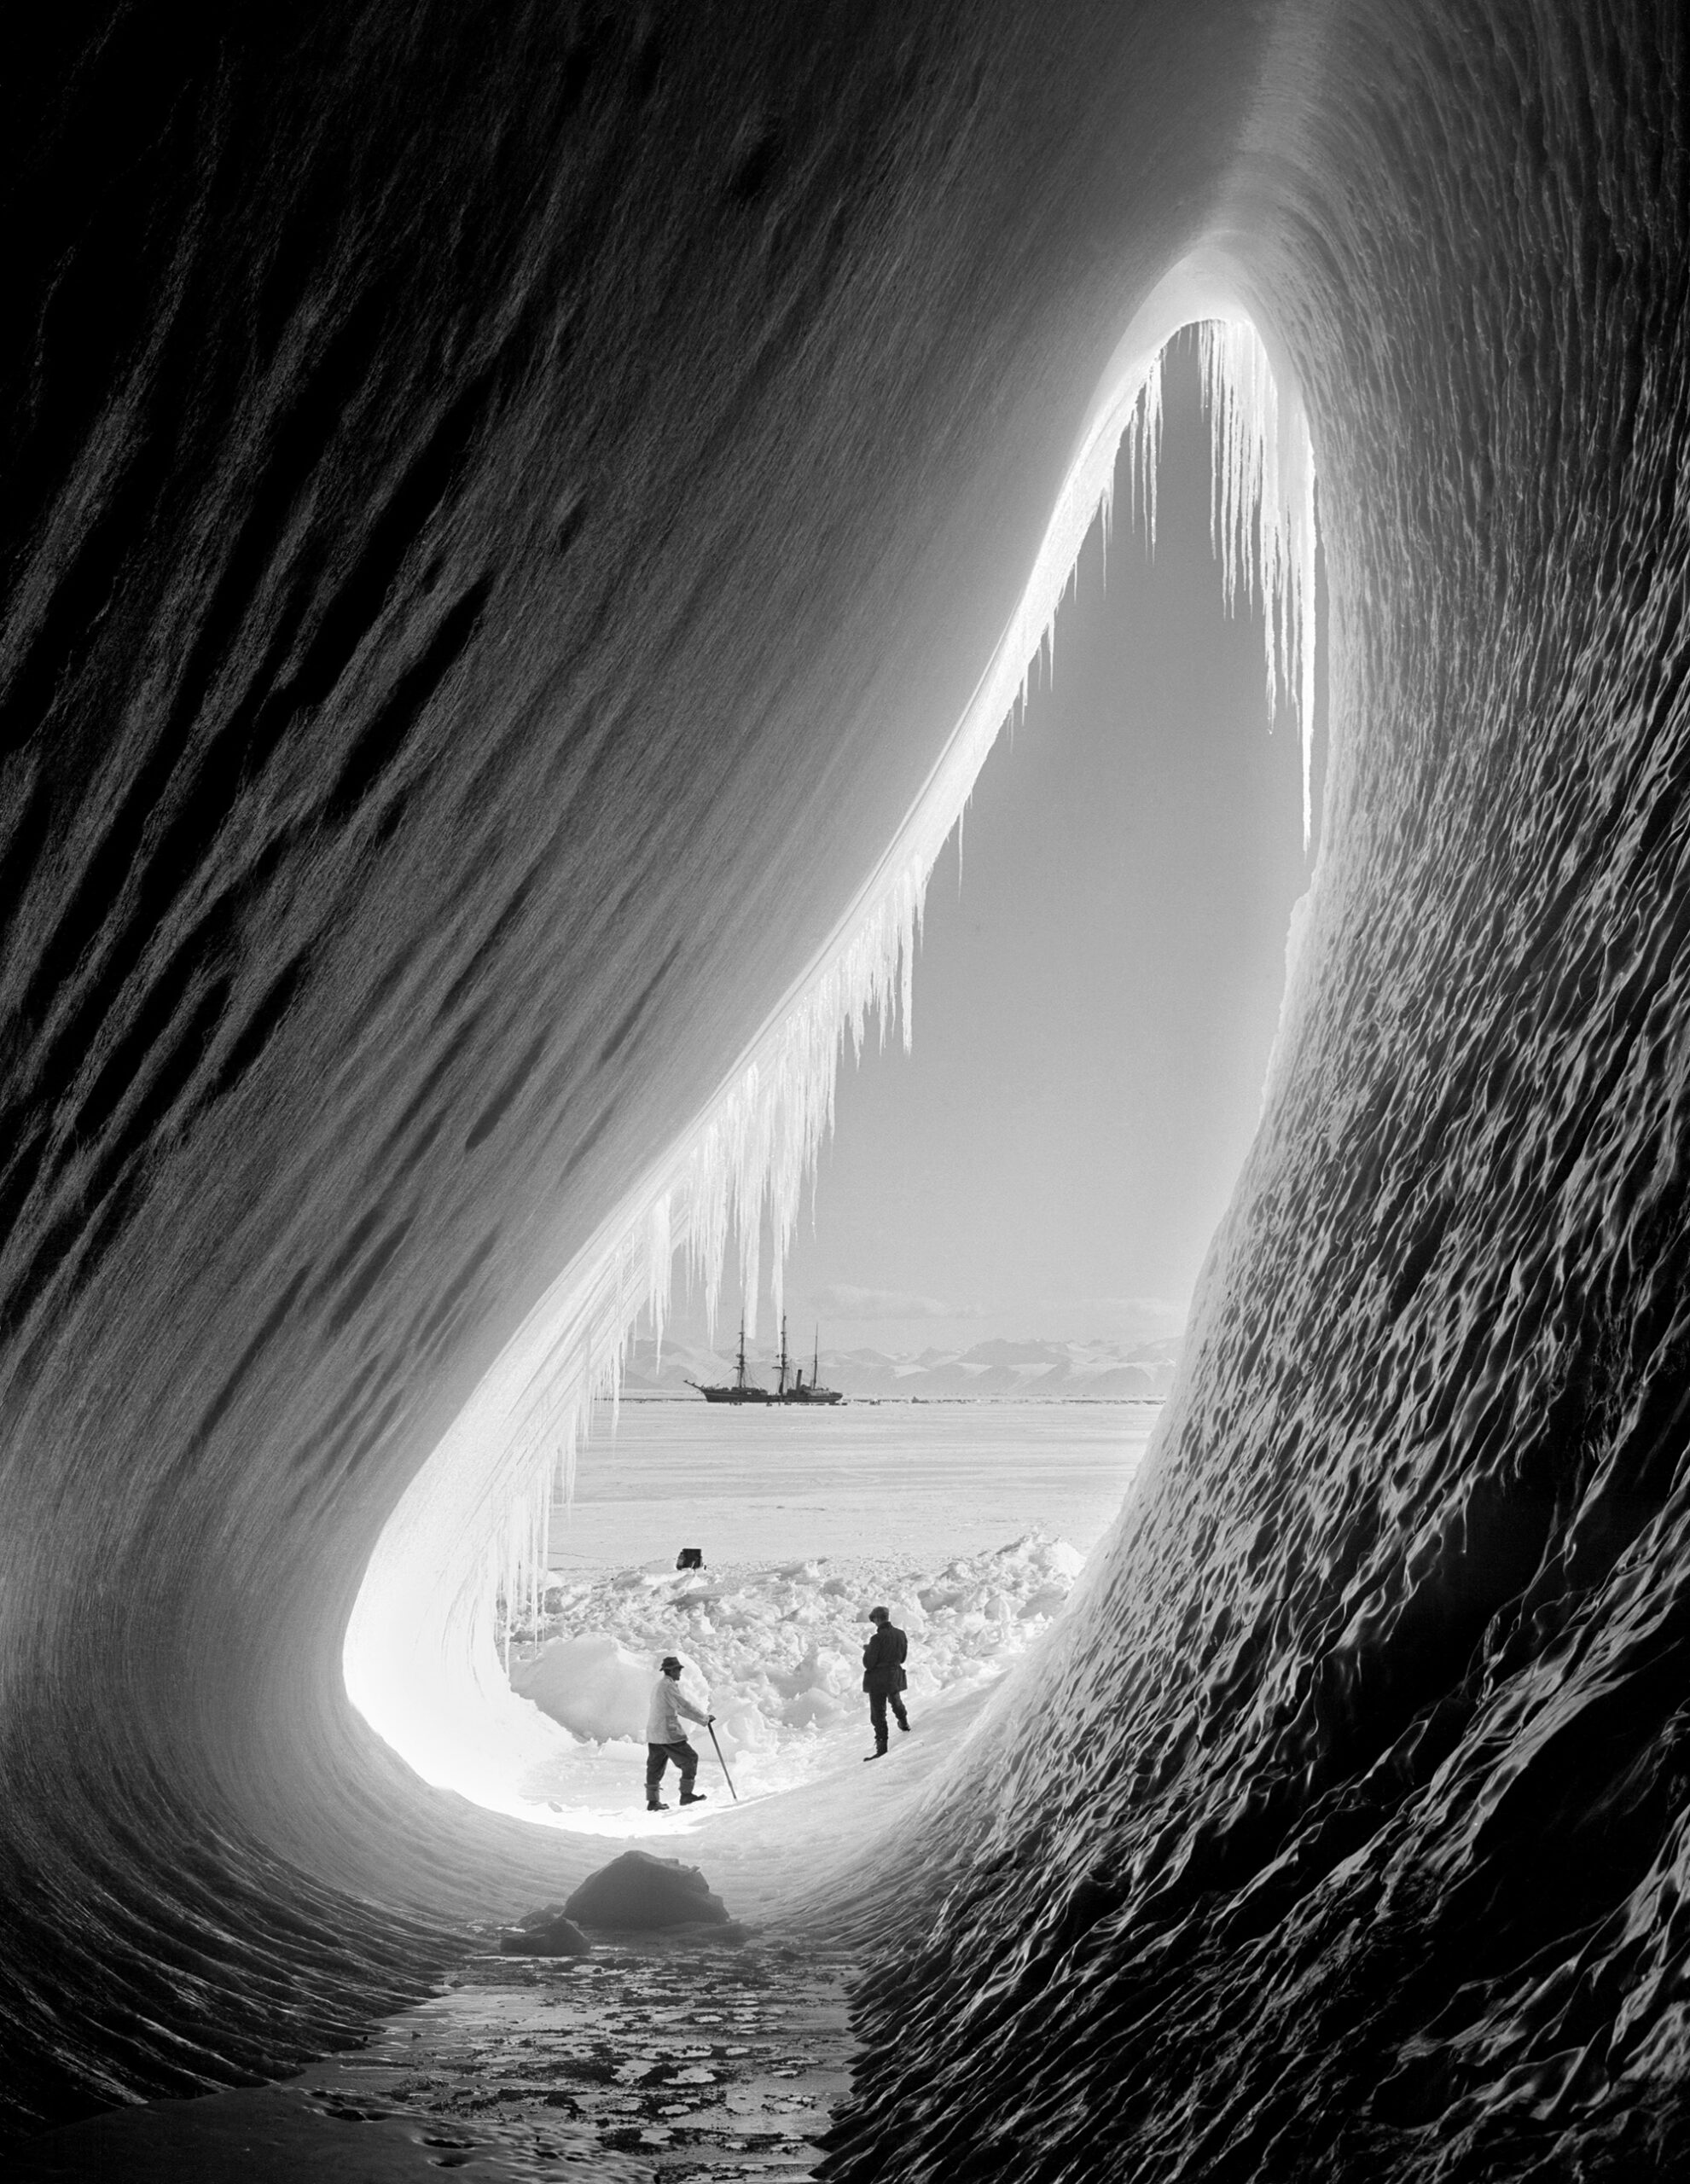 Terra Nova expedition.